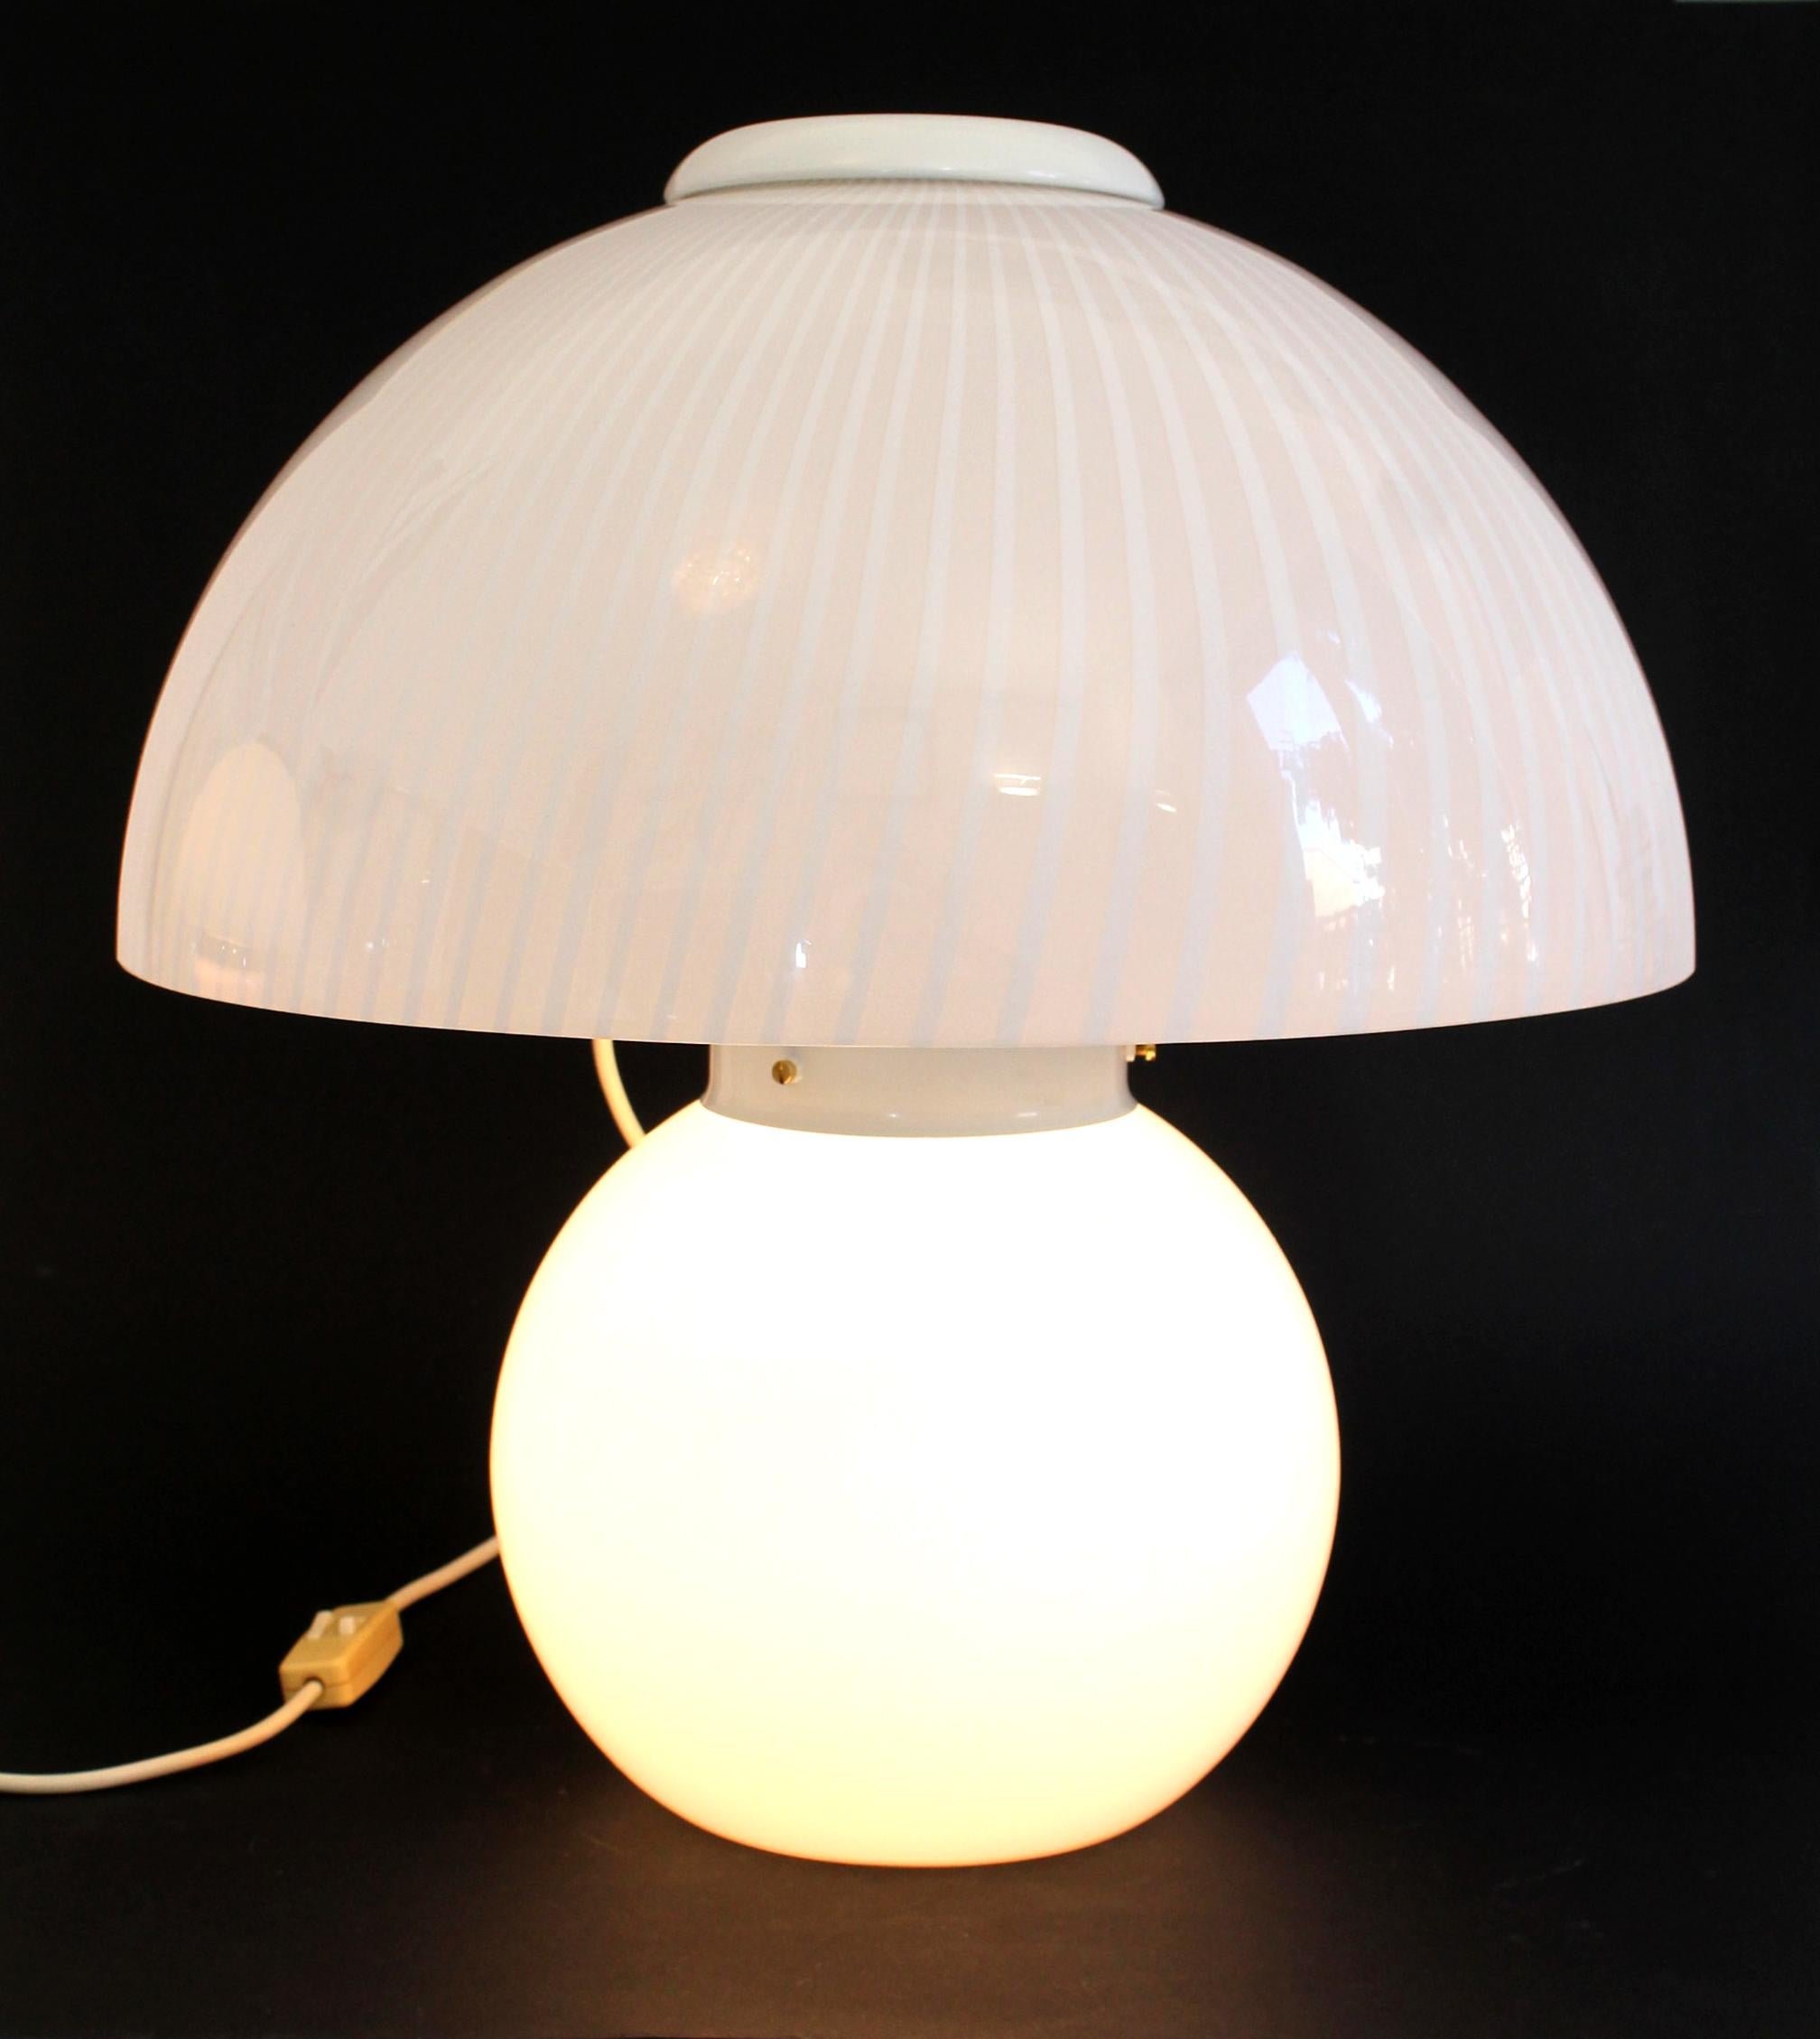 Lampe de table classique vintage en verre de Murano avec un tourbillon de champignons, fabriquée par VeLuce (Italie) dans les années 1970.

Mesures : 48 cm de hauteur x 43 cm de diamètre supérieur x 25 cm de diamètre inférieur de la base.

La